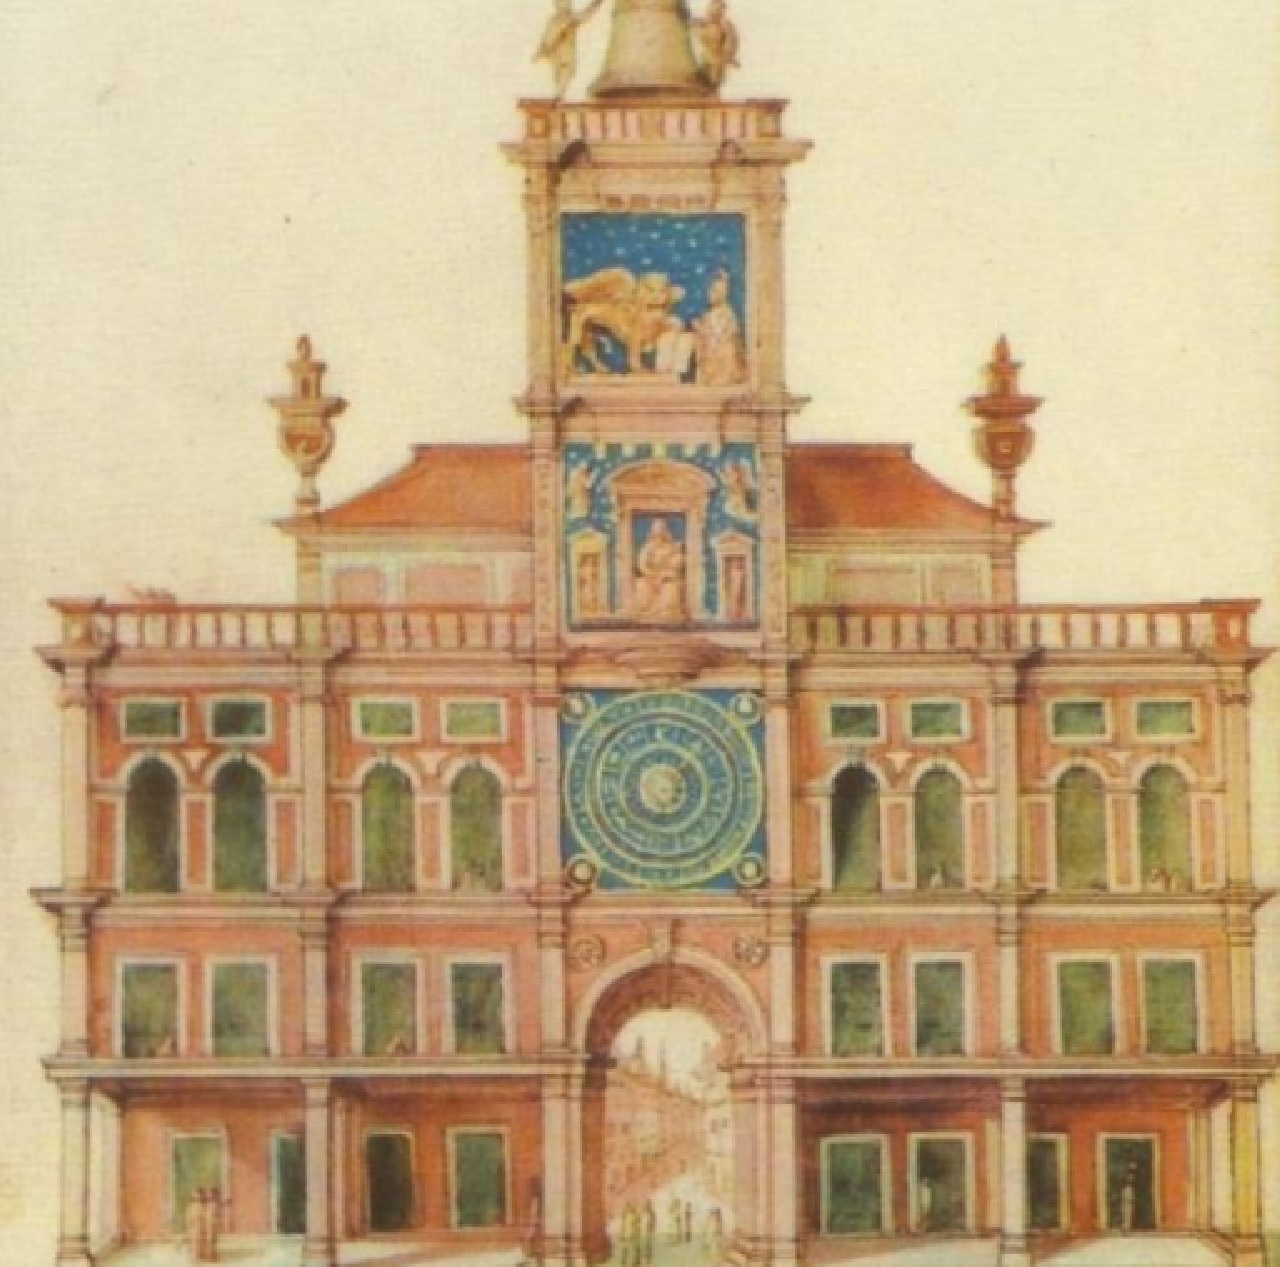 boia torre dell'orologio come appariva nel XVII secolo